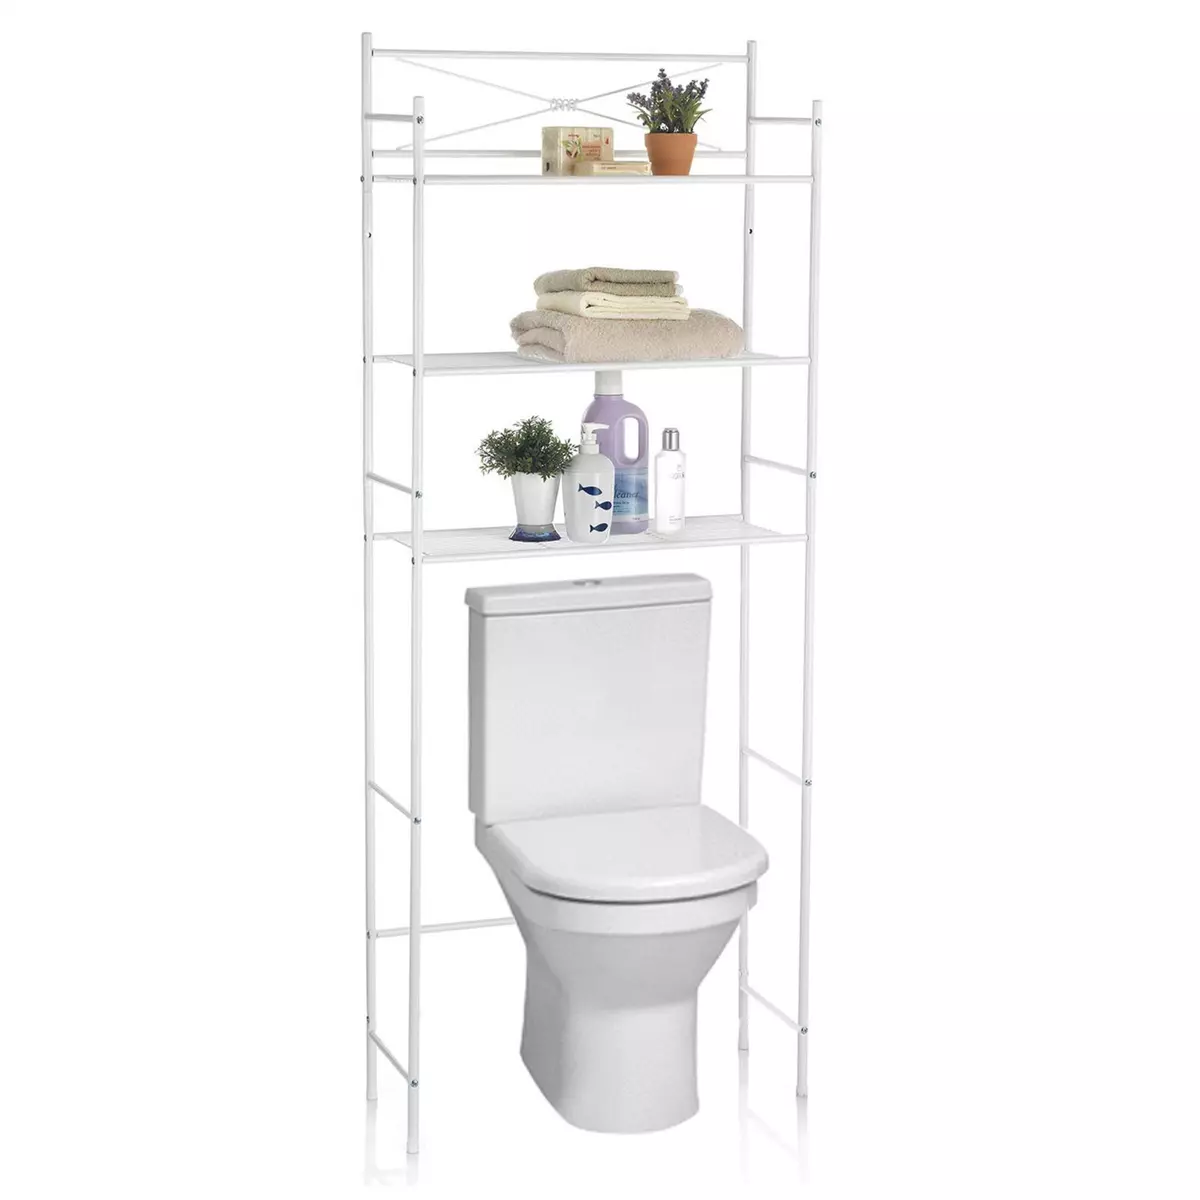 IDIMEX Etagère de salle de bain MARSA meuble de rangement au-dessus des toilettes wc ou lave-linge avec 3 tablettes, en métal laqué blanc